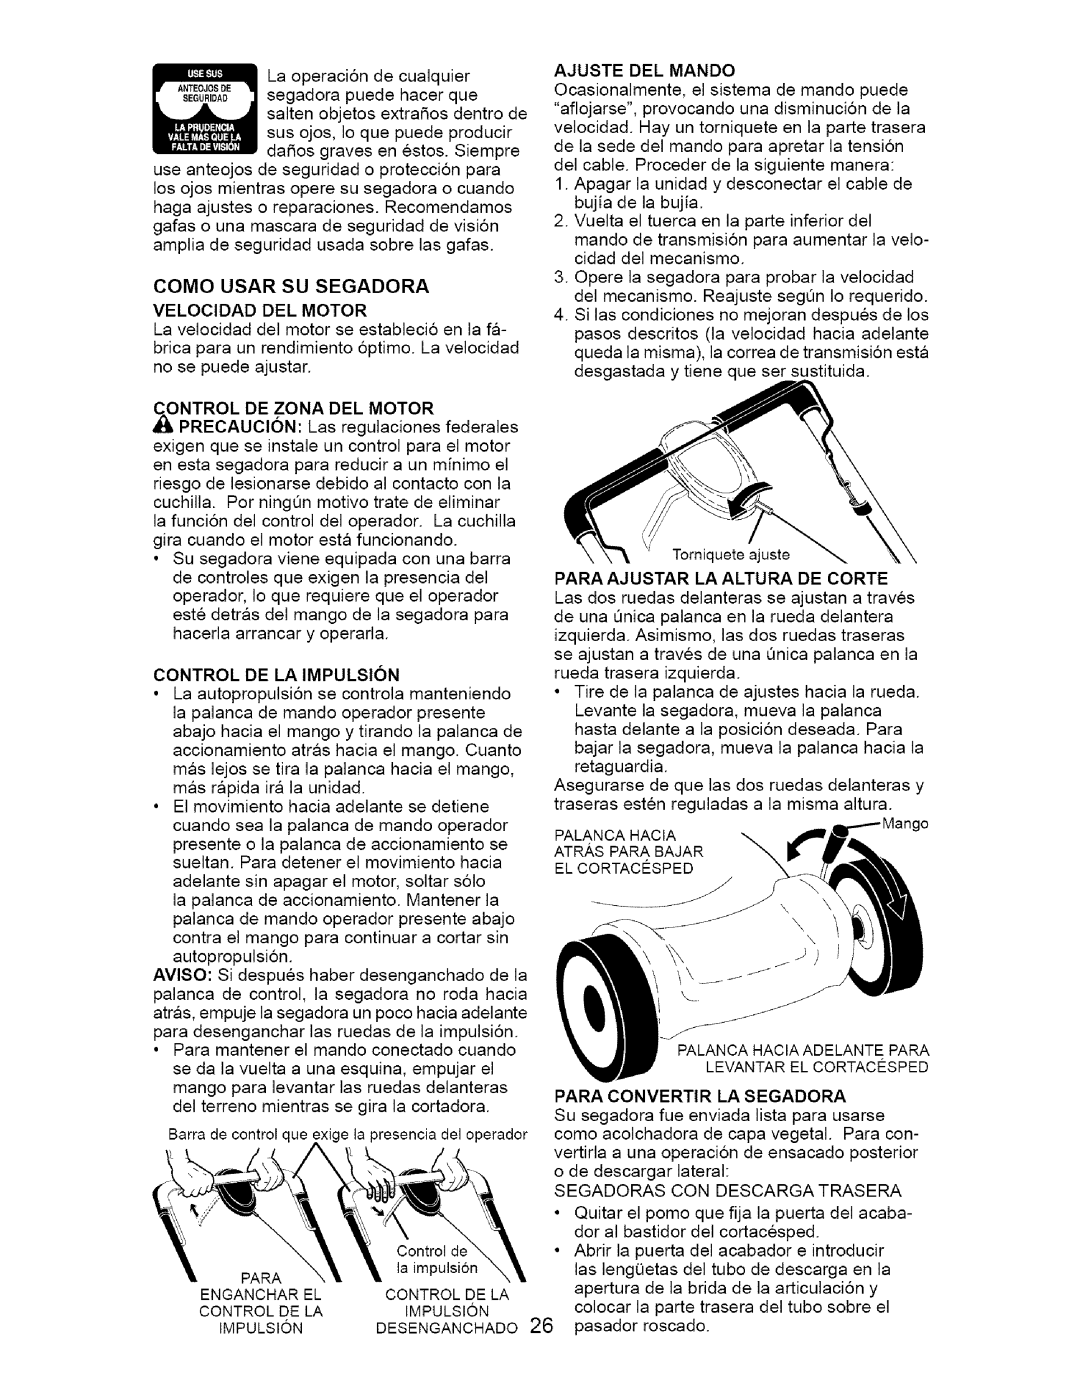 Craftsman 917.377011 owner manual Velocidad Del Motor, Control De La Impulsion 